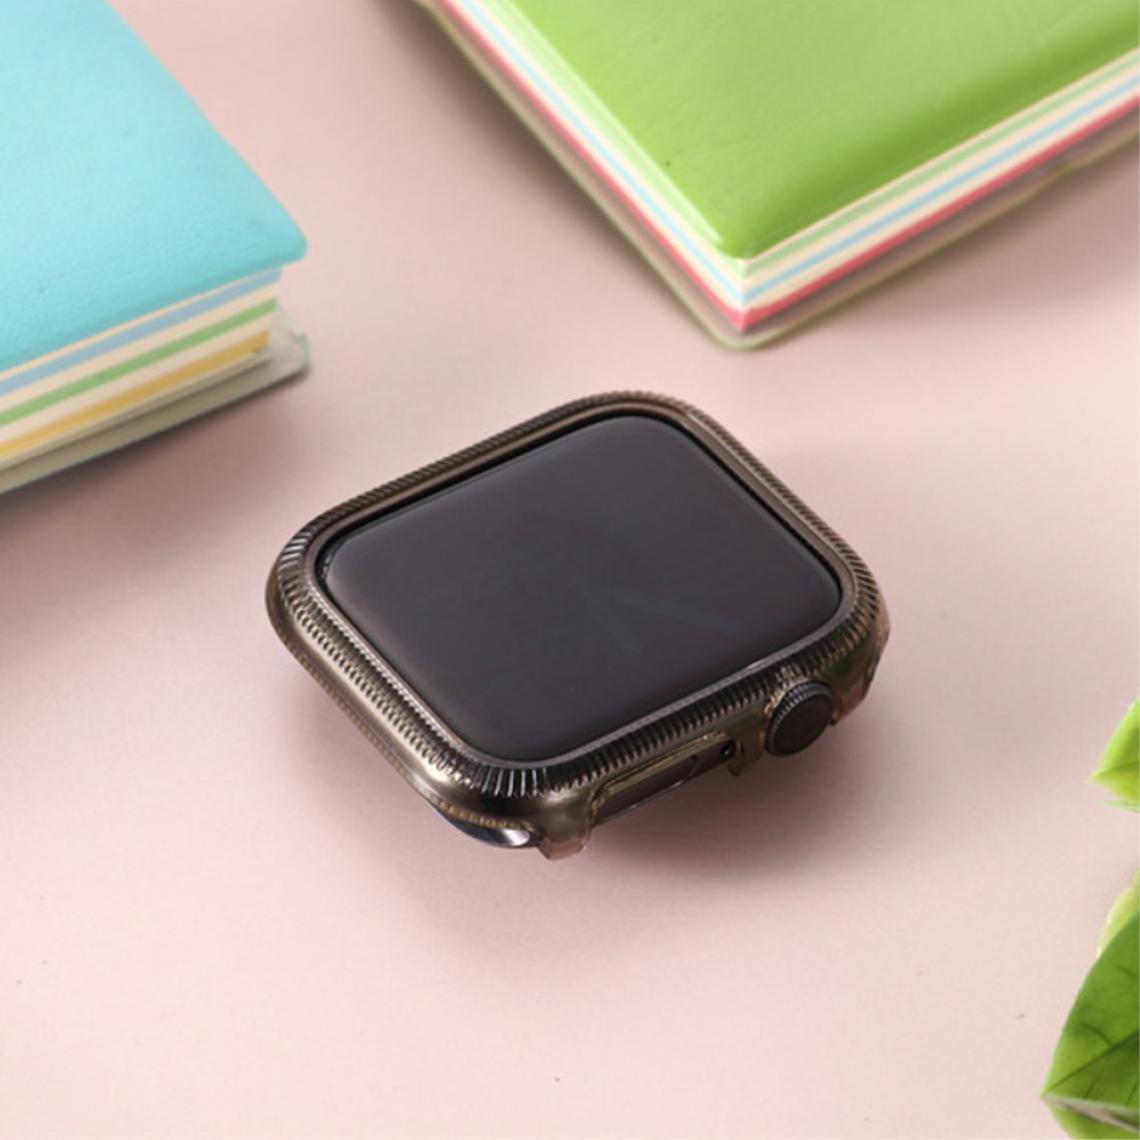 Other - Coque en TPU cadre coloré noir pour votre Apple Watch Series 6/SE/5/4 44mm - Accessoires bracelet connecté